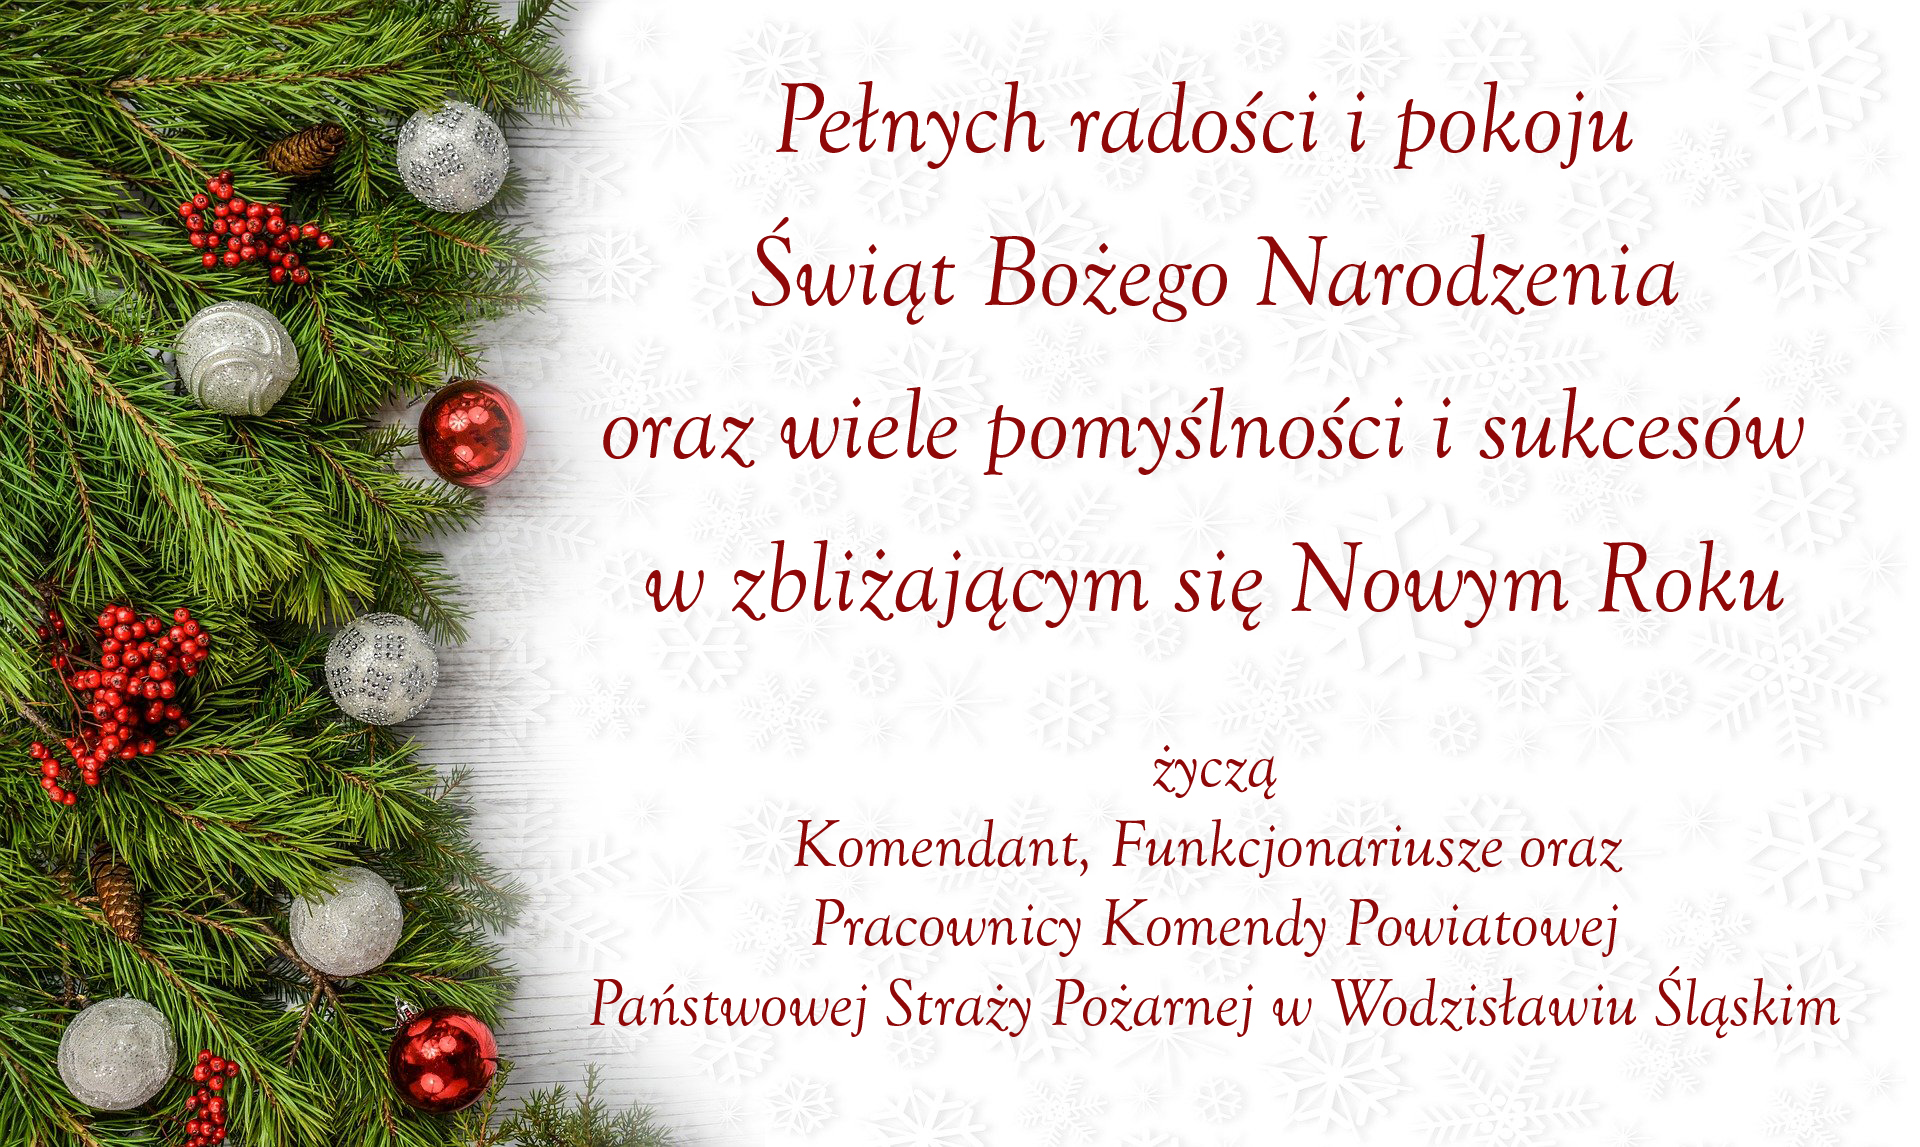 Pełnych radości i pokoju Świąt Bożego Narodzenia oraz wiele pomyślności i sukcesów w zbliżającym się Nowym Roku życzą Komendant, Funkcjonariusze oraz Pracownicy Komendy Powiatowej Państwowej Straży Pożarnej w Wodzisławiu Śląskim